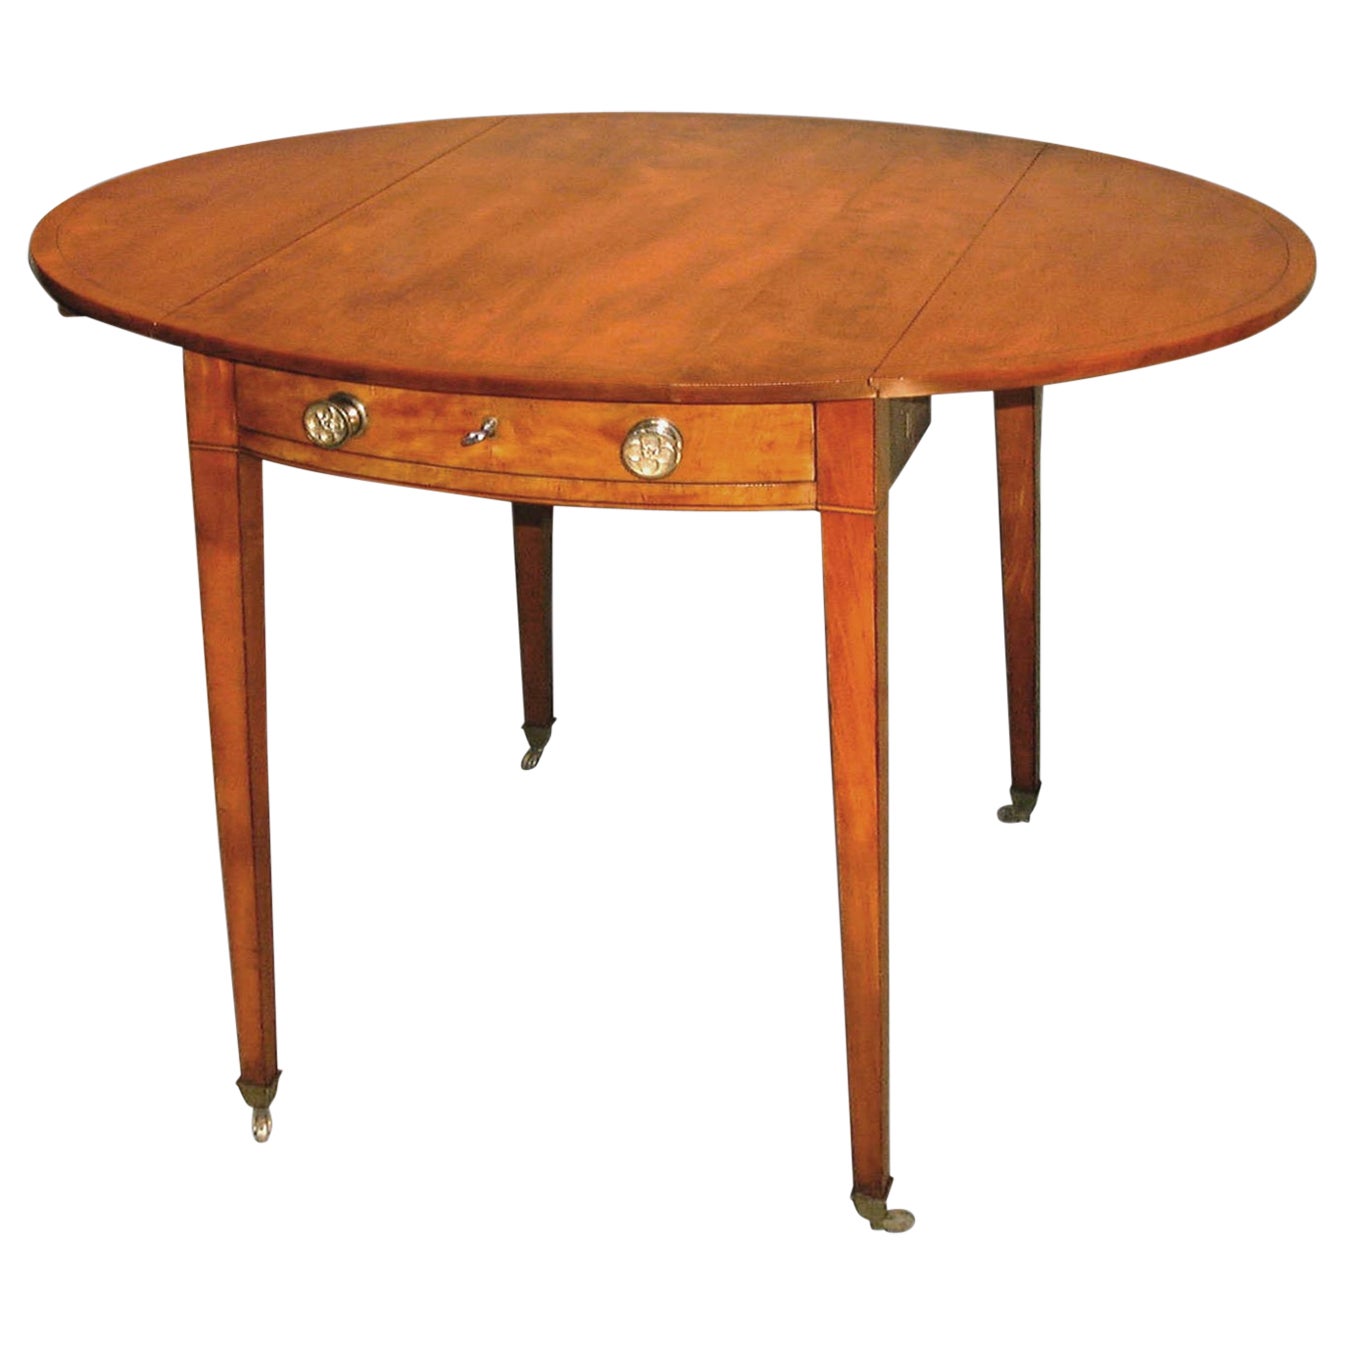 Ovaler Pembroke-Tisch aus massivem Satinholz von Sheraton aus dem 18. Jahrhundert